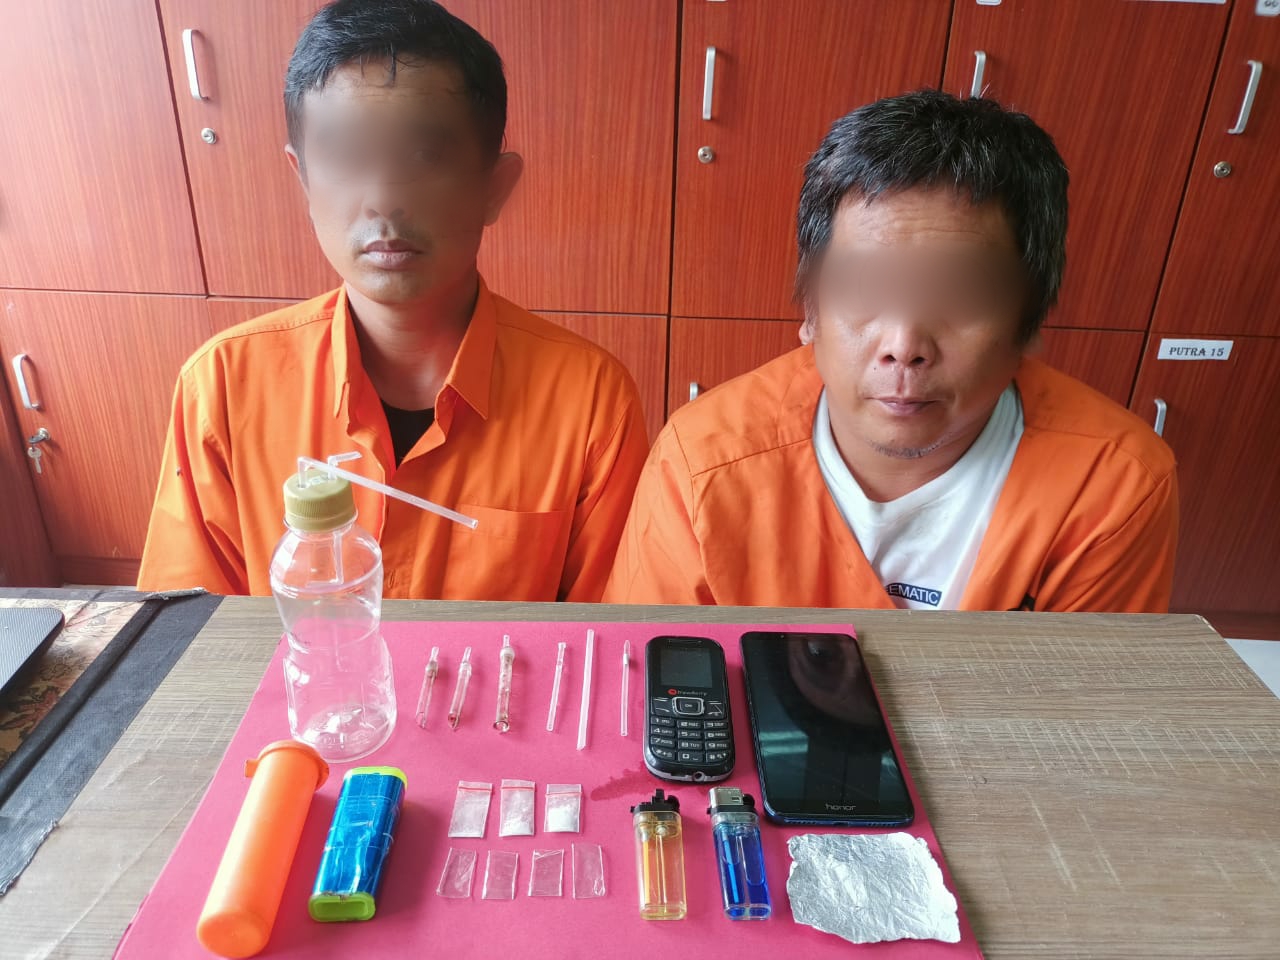 Polres Siak Kembali Berhasil Tangkap 2 Pria Pengedar Narkoba di Kecamatan Tualang